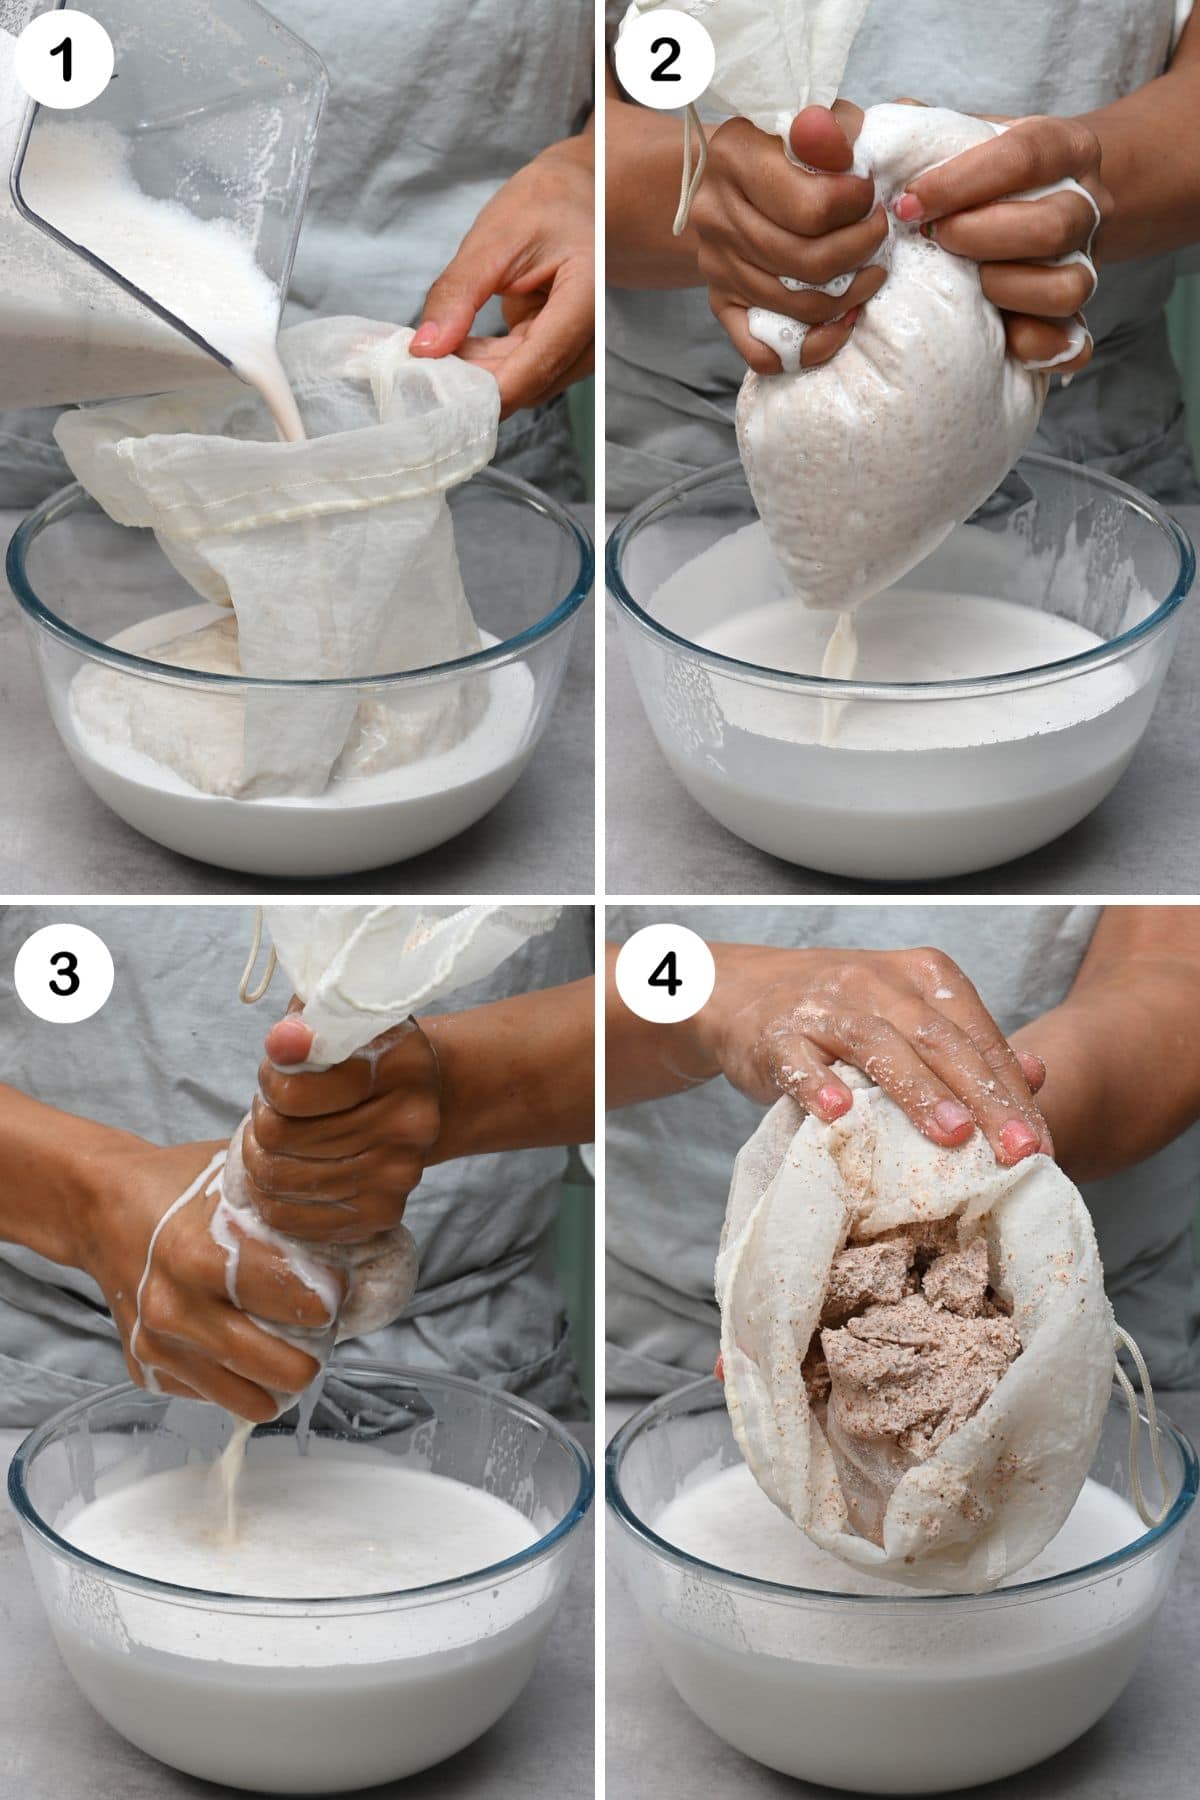 Steps for straining homemade almond milk